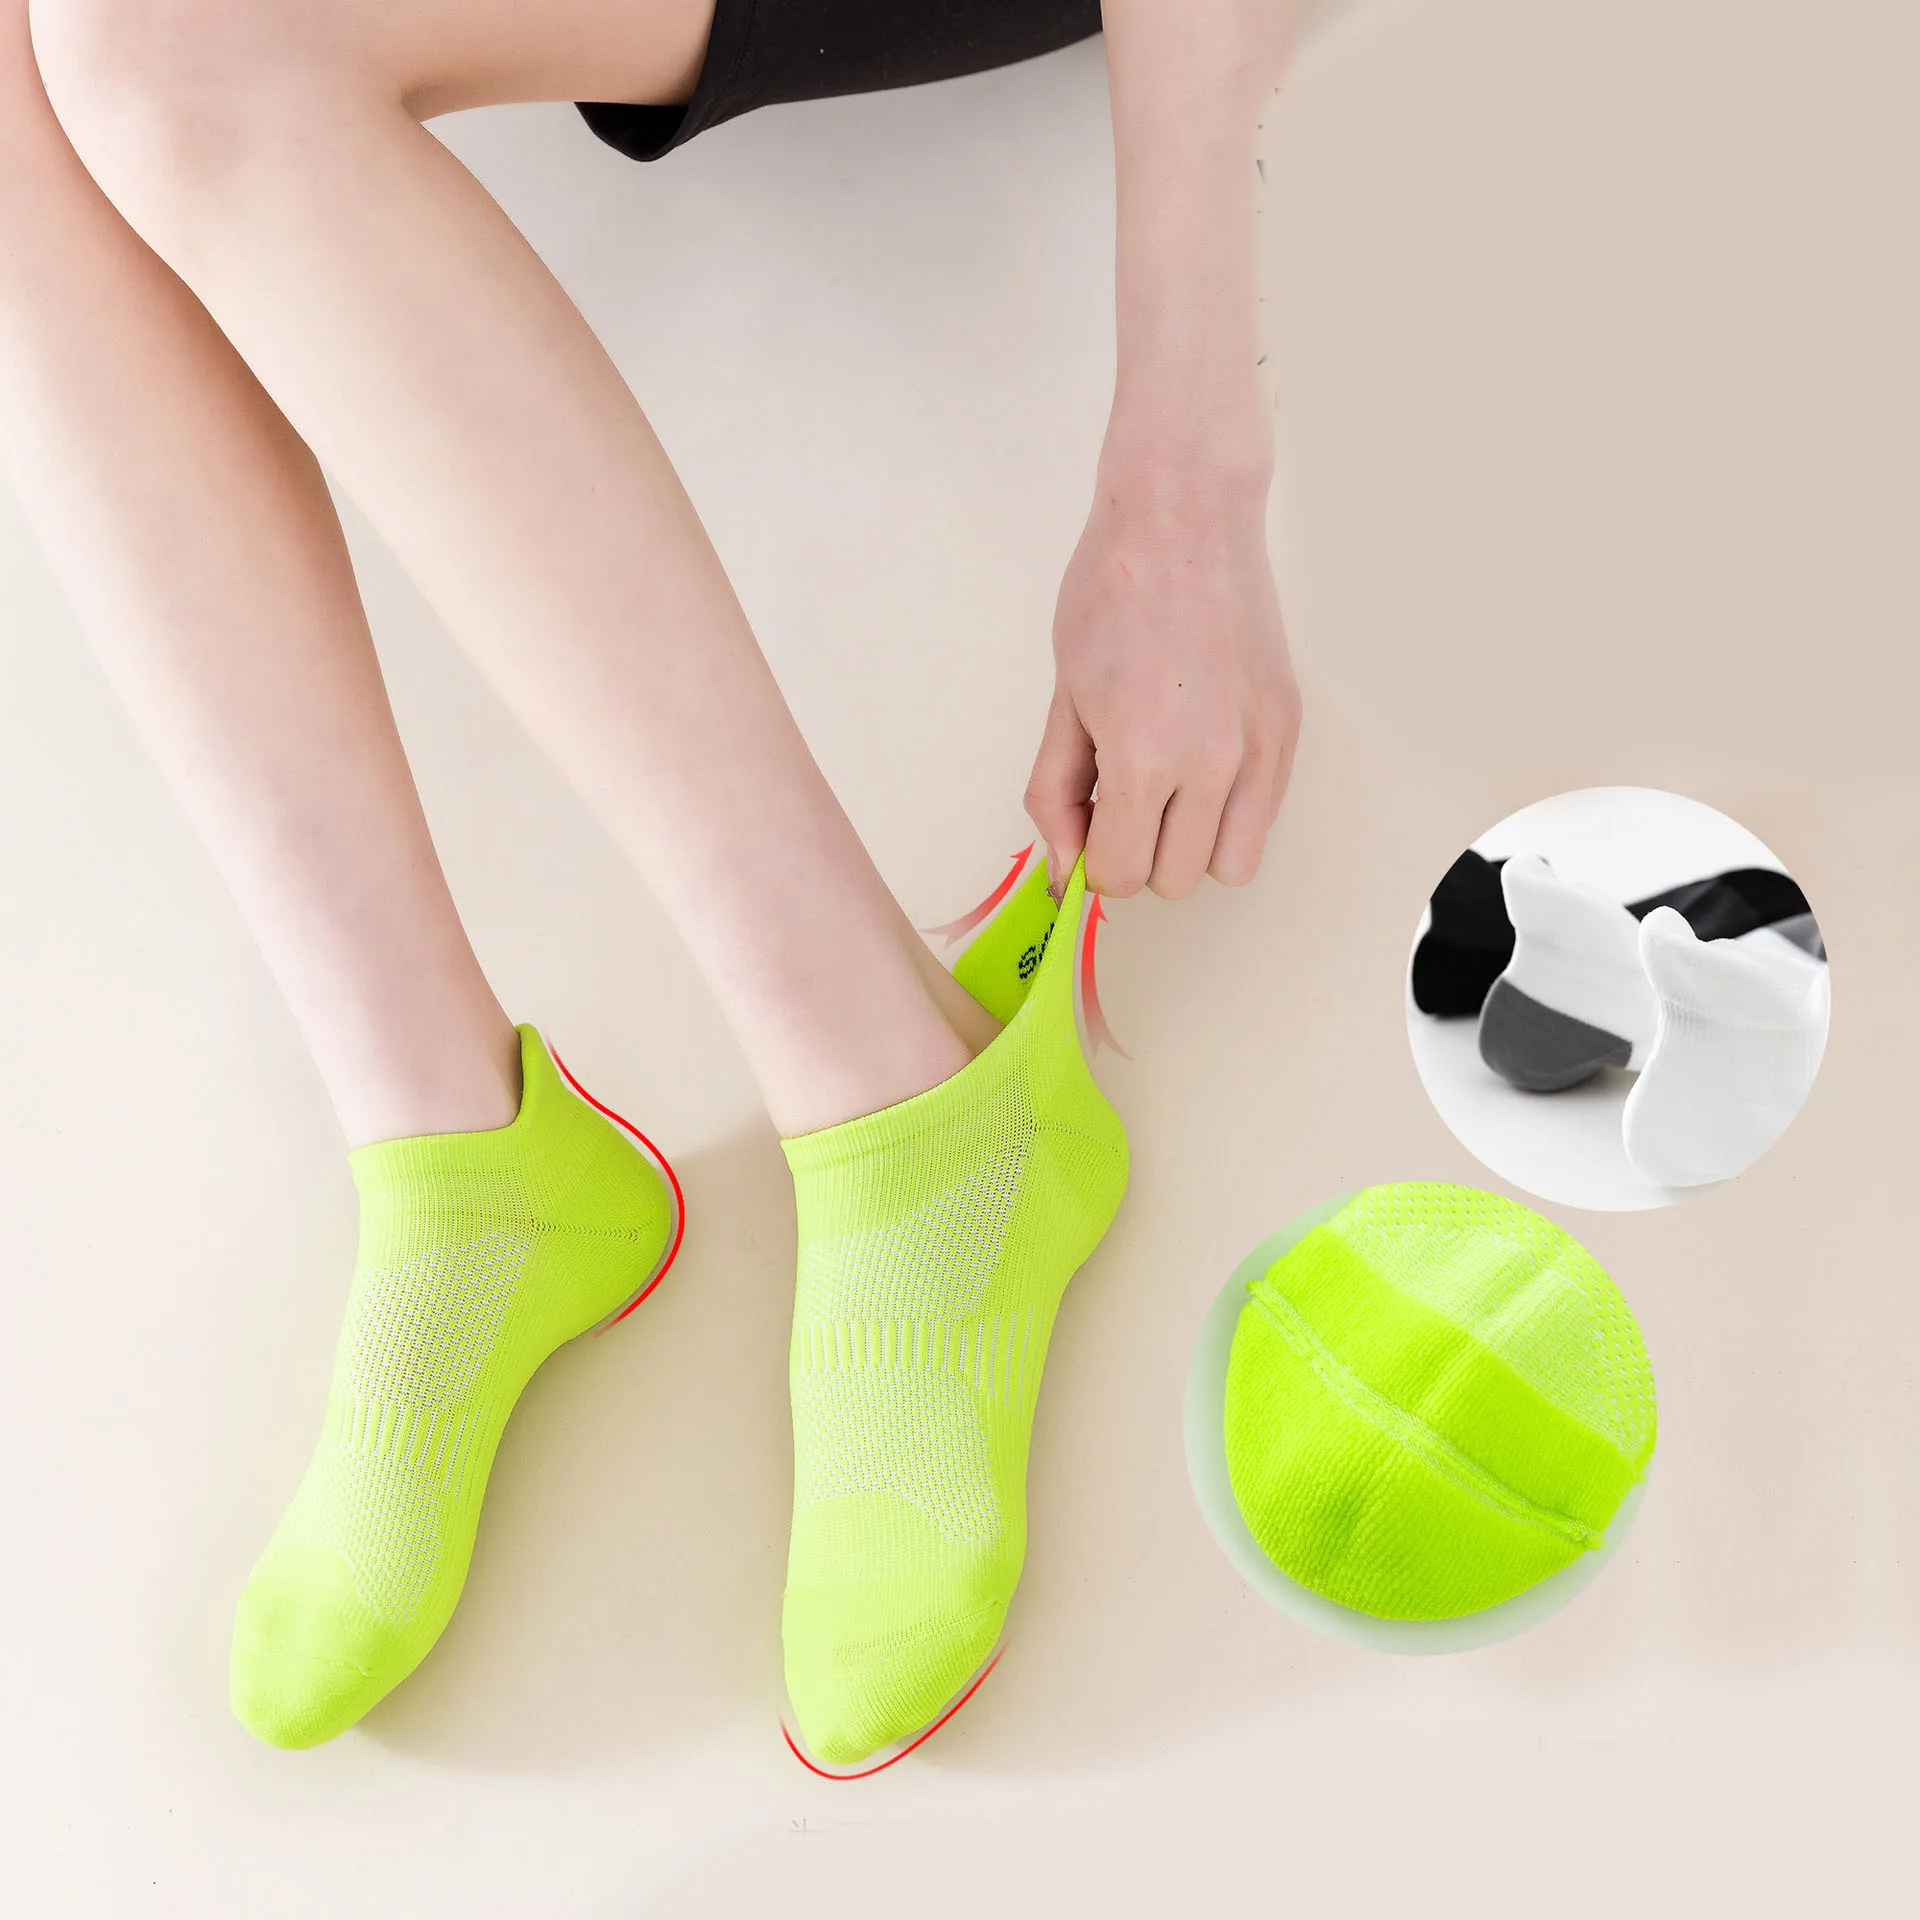 Профессиональные Спортивные Носки Для Мужчин И Женщин, Удобные Дышащие Носки Для Бега На Открытом Воздухе С Неглубоким Вырезом, Короткие Носки Для Бадминтона, Socken - 2